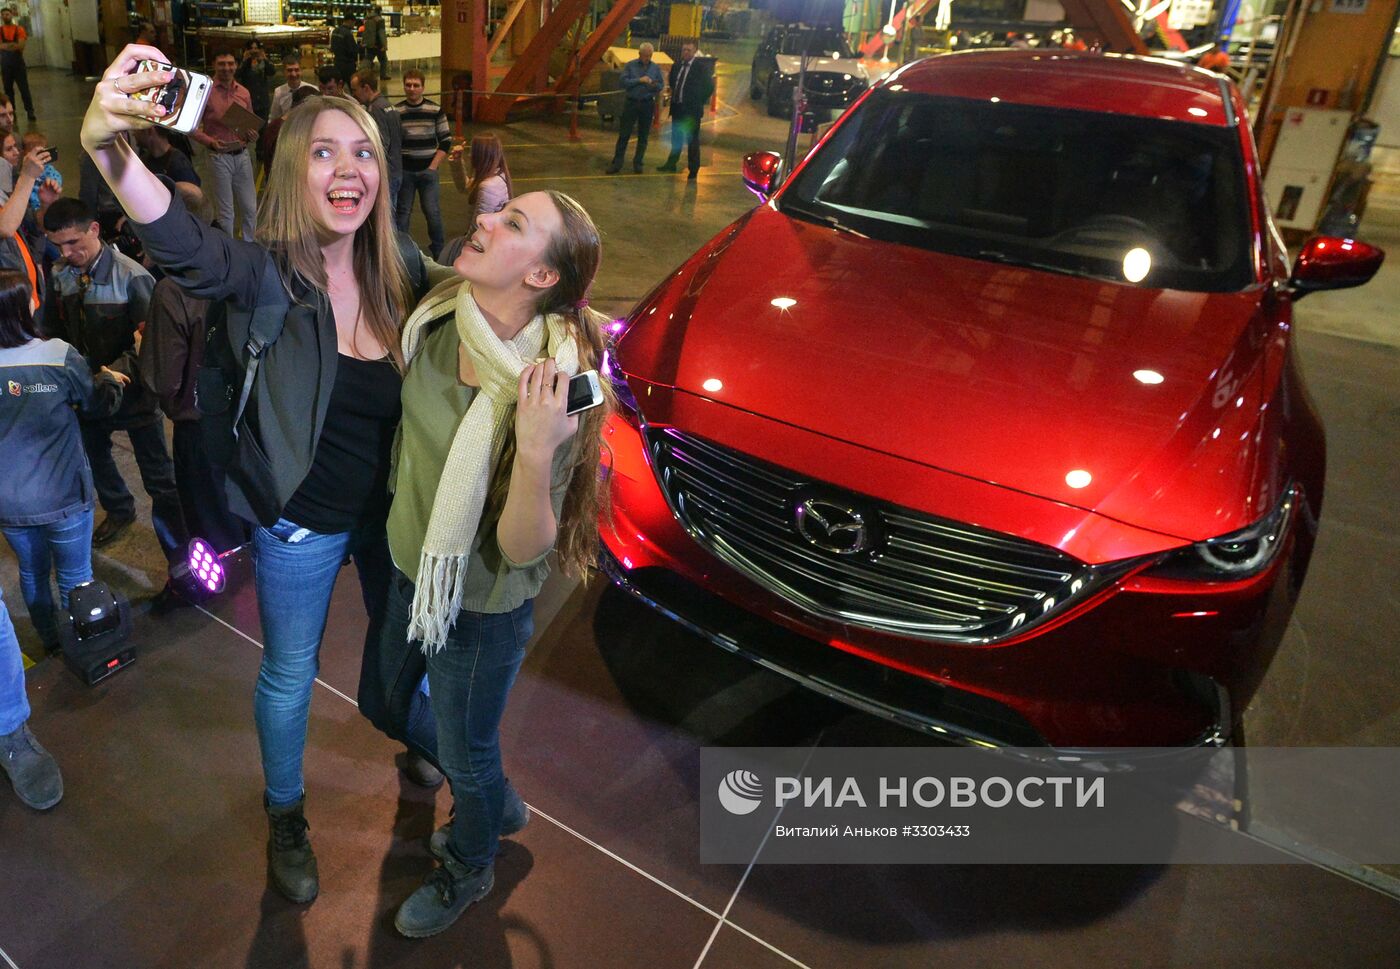 Запуск производства новой модели автомобиля Mazda CX-9 во Владивостоке